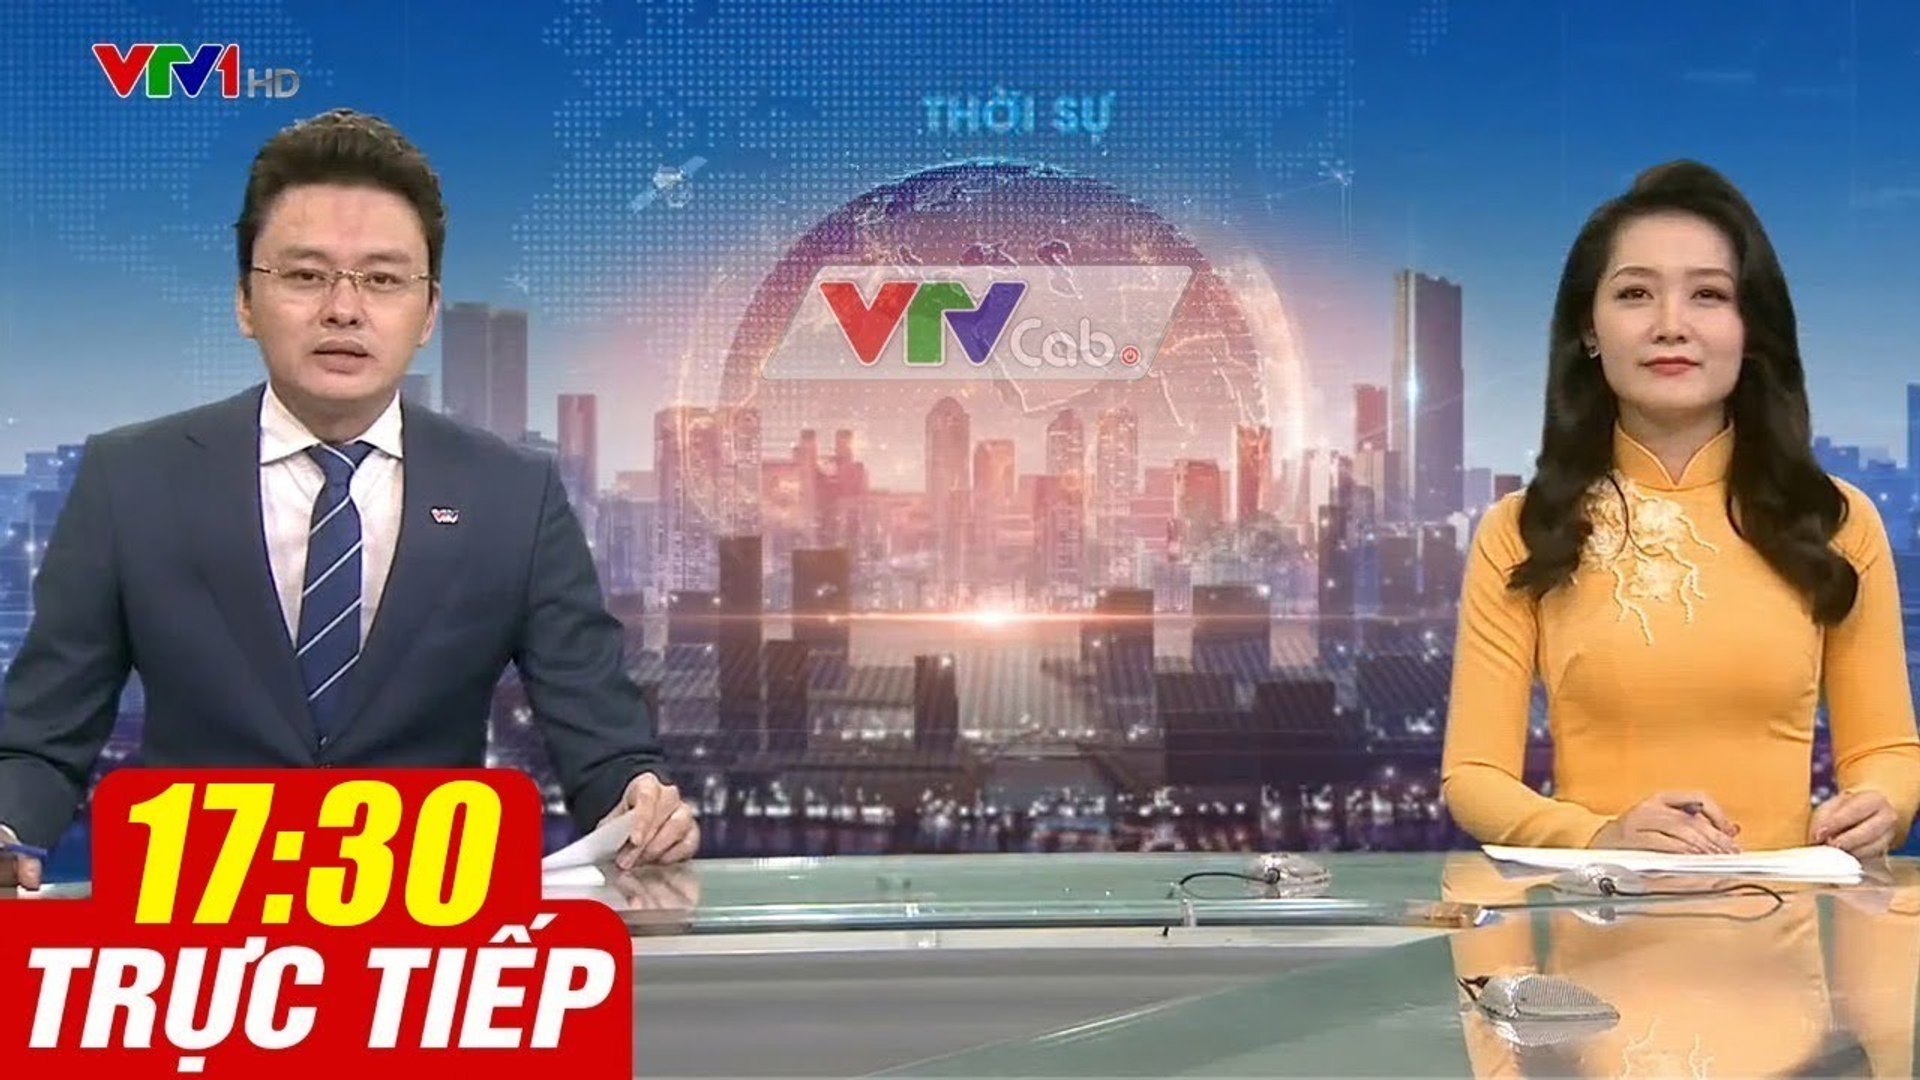 Trực Tiếp VIỆT NAM HÔM NAY 17h30 ngày 13.10.2020  Tin tức thời sự VTV1 mới nhất hôm nay